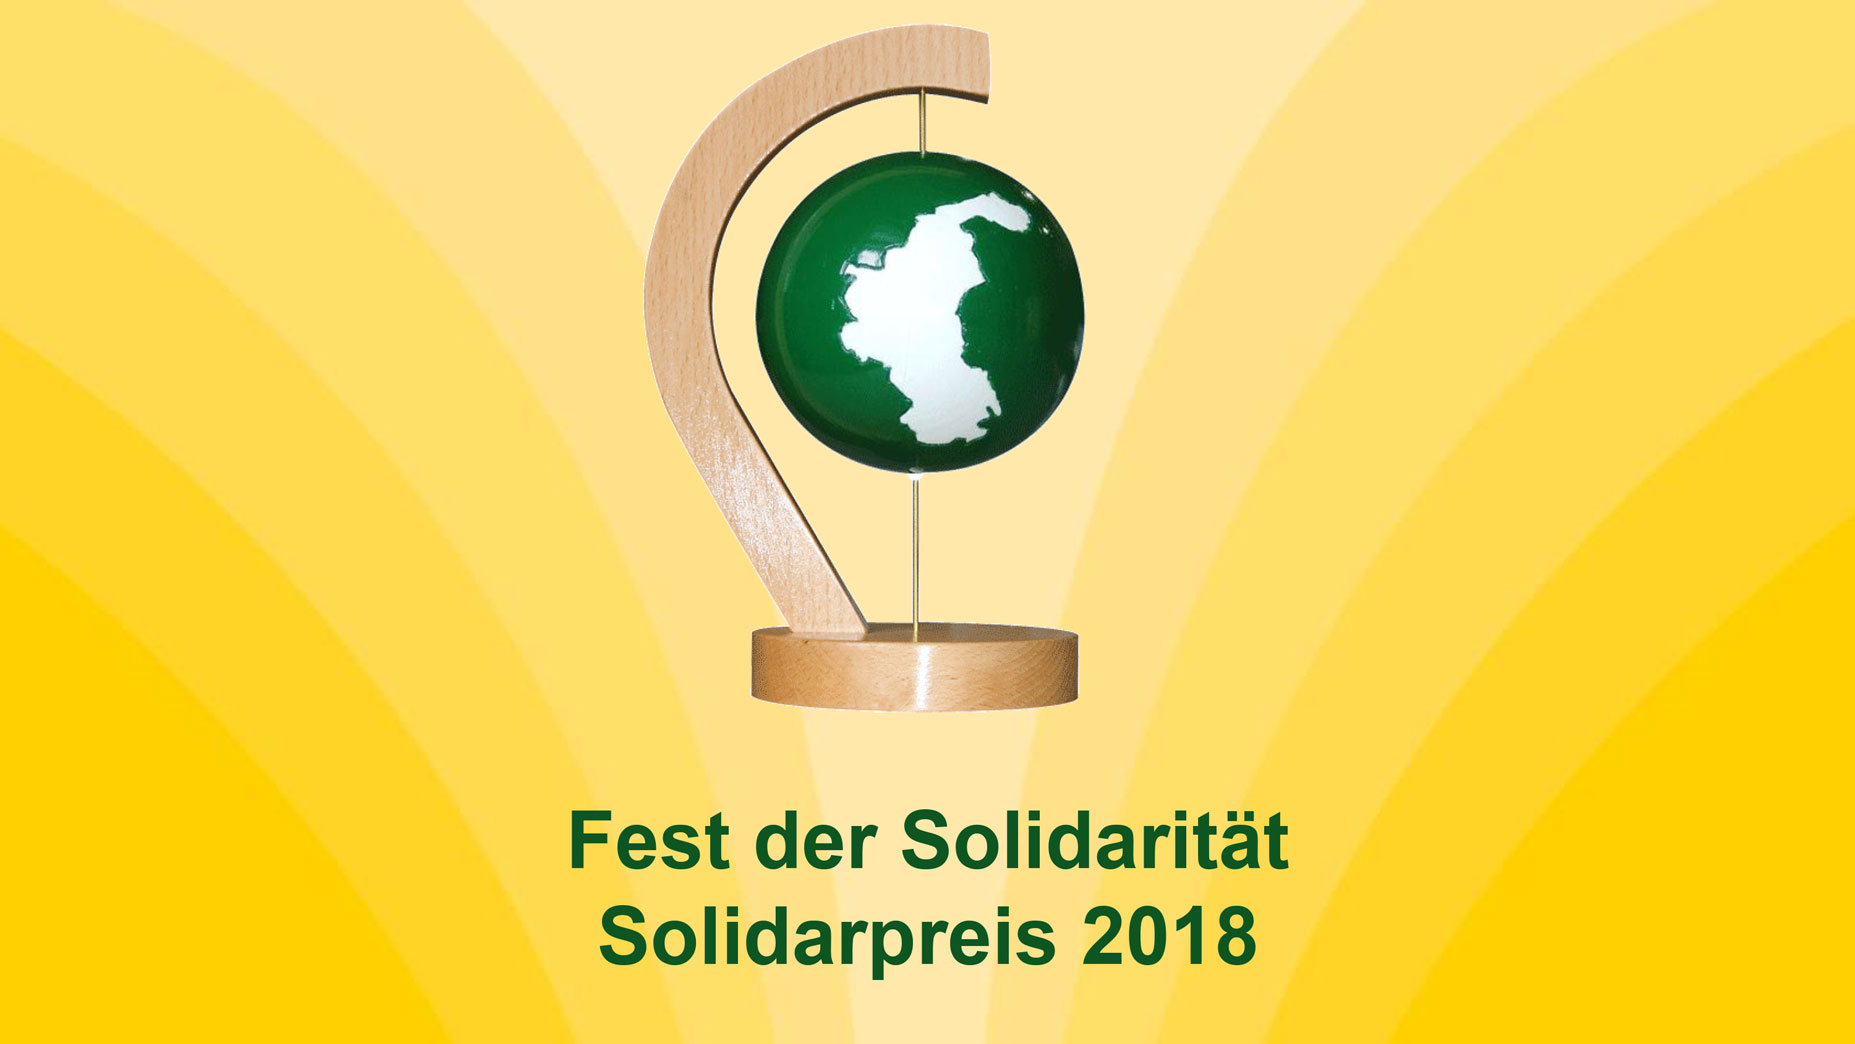 Solidarpreis_2018_16_9-1855